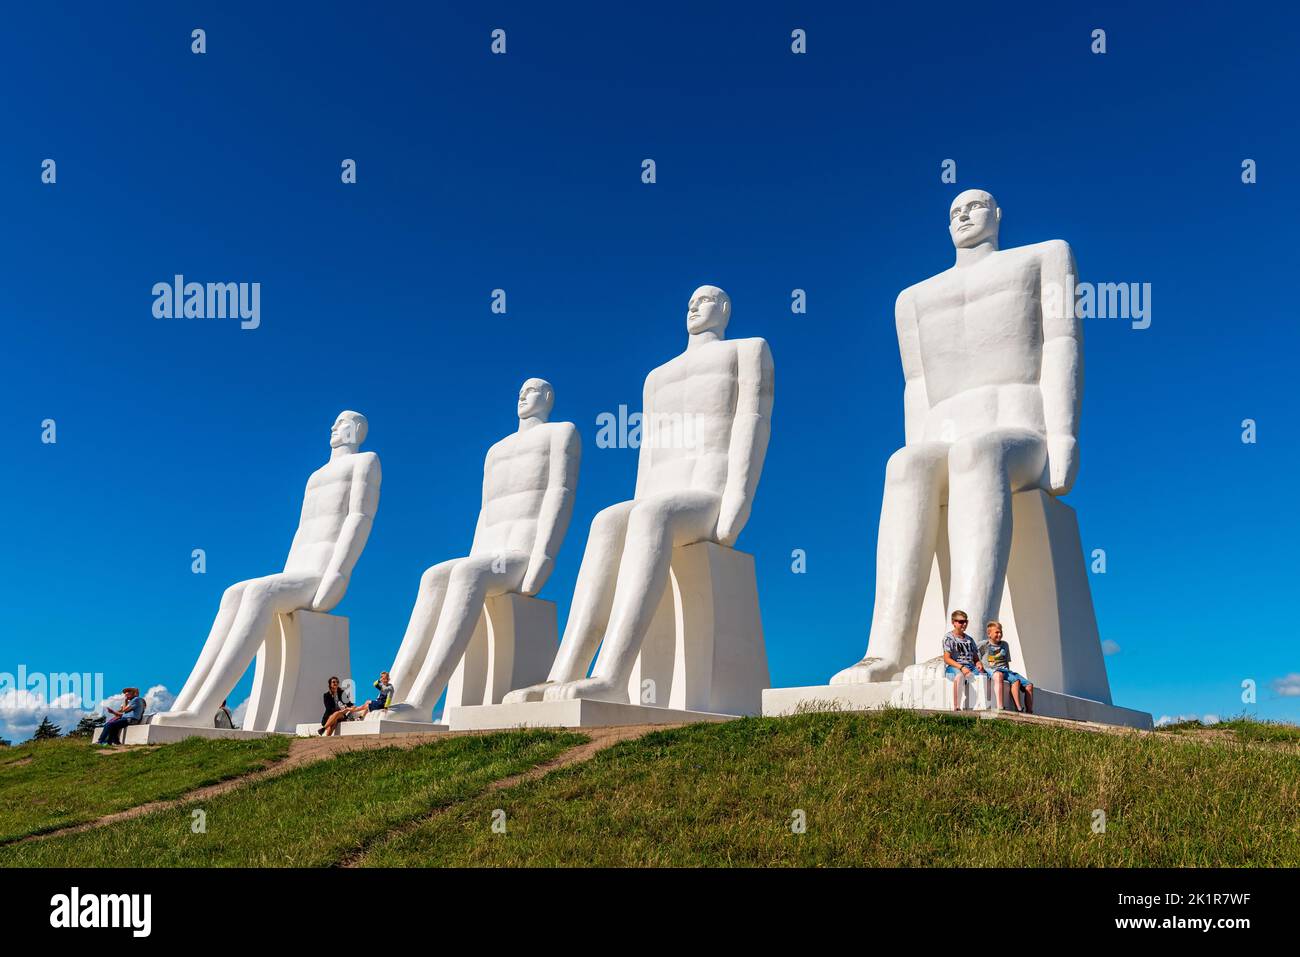 Uomini a Mare sculture, progettato da Svend Wiig Hansen e installato alla fine del 1995, per celebrare il 100th ° anniversario del comune di Esbjerg in Foto Stock